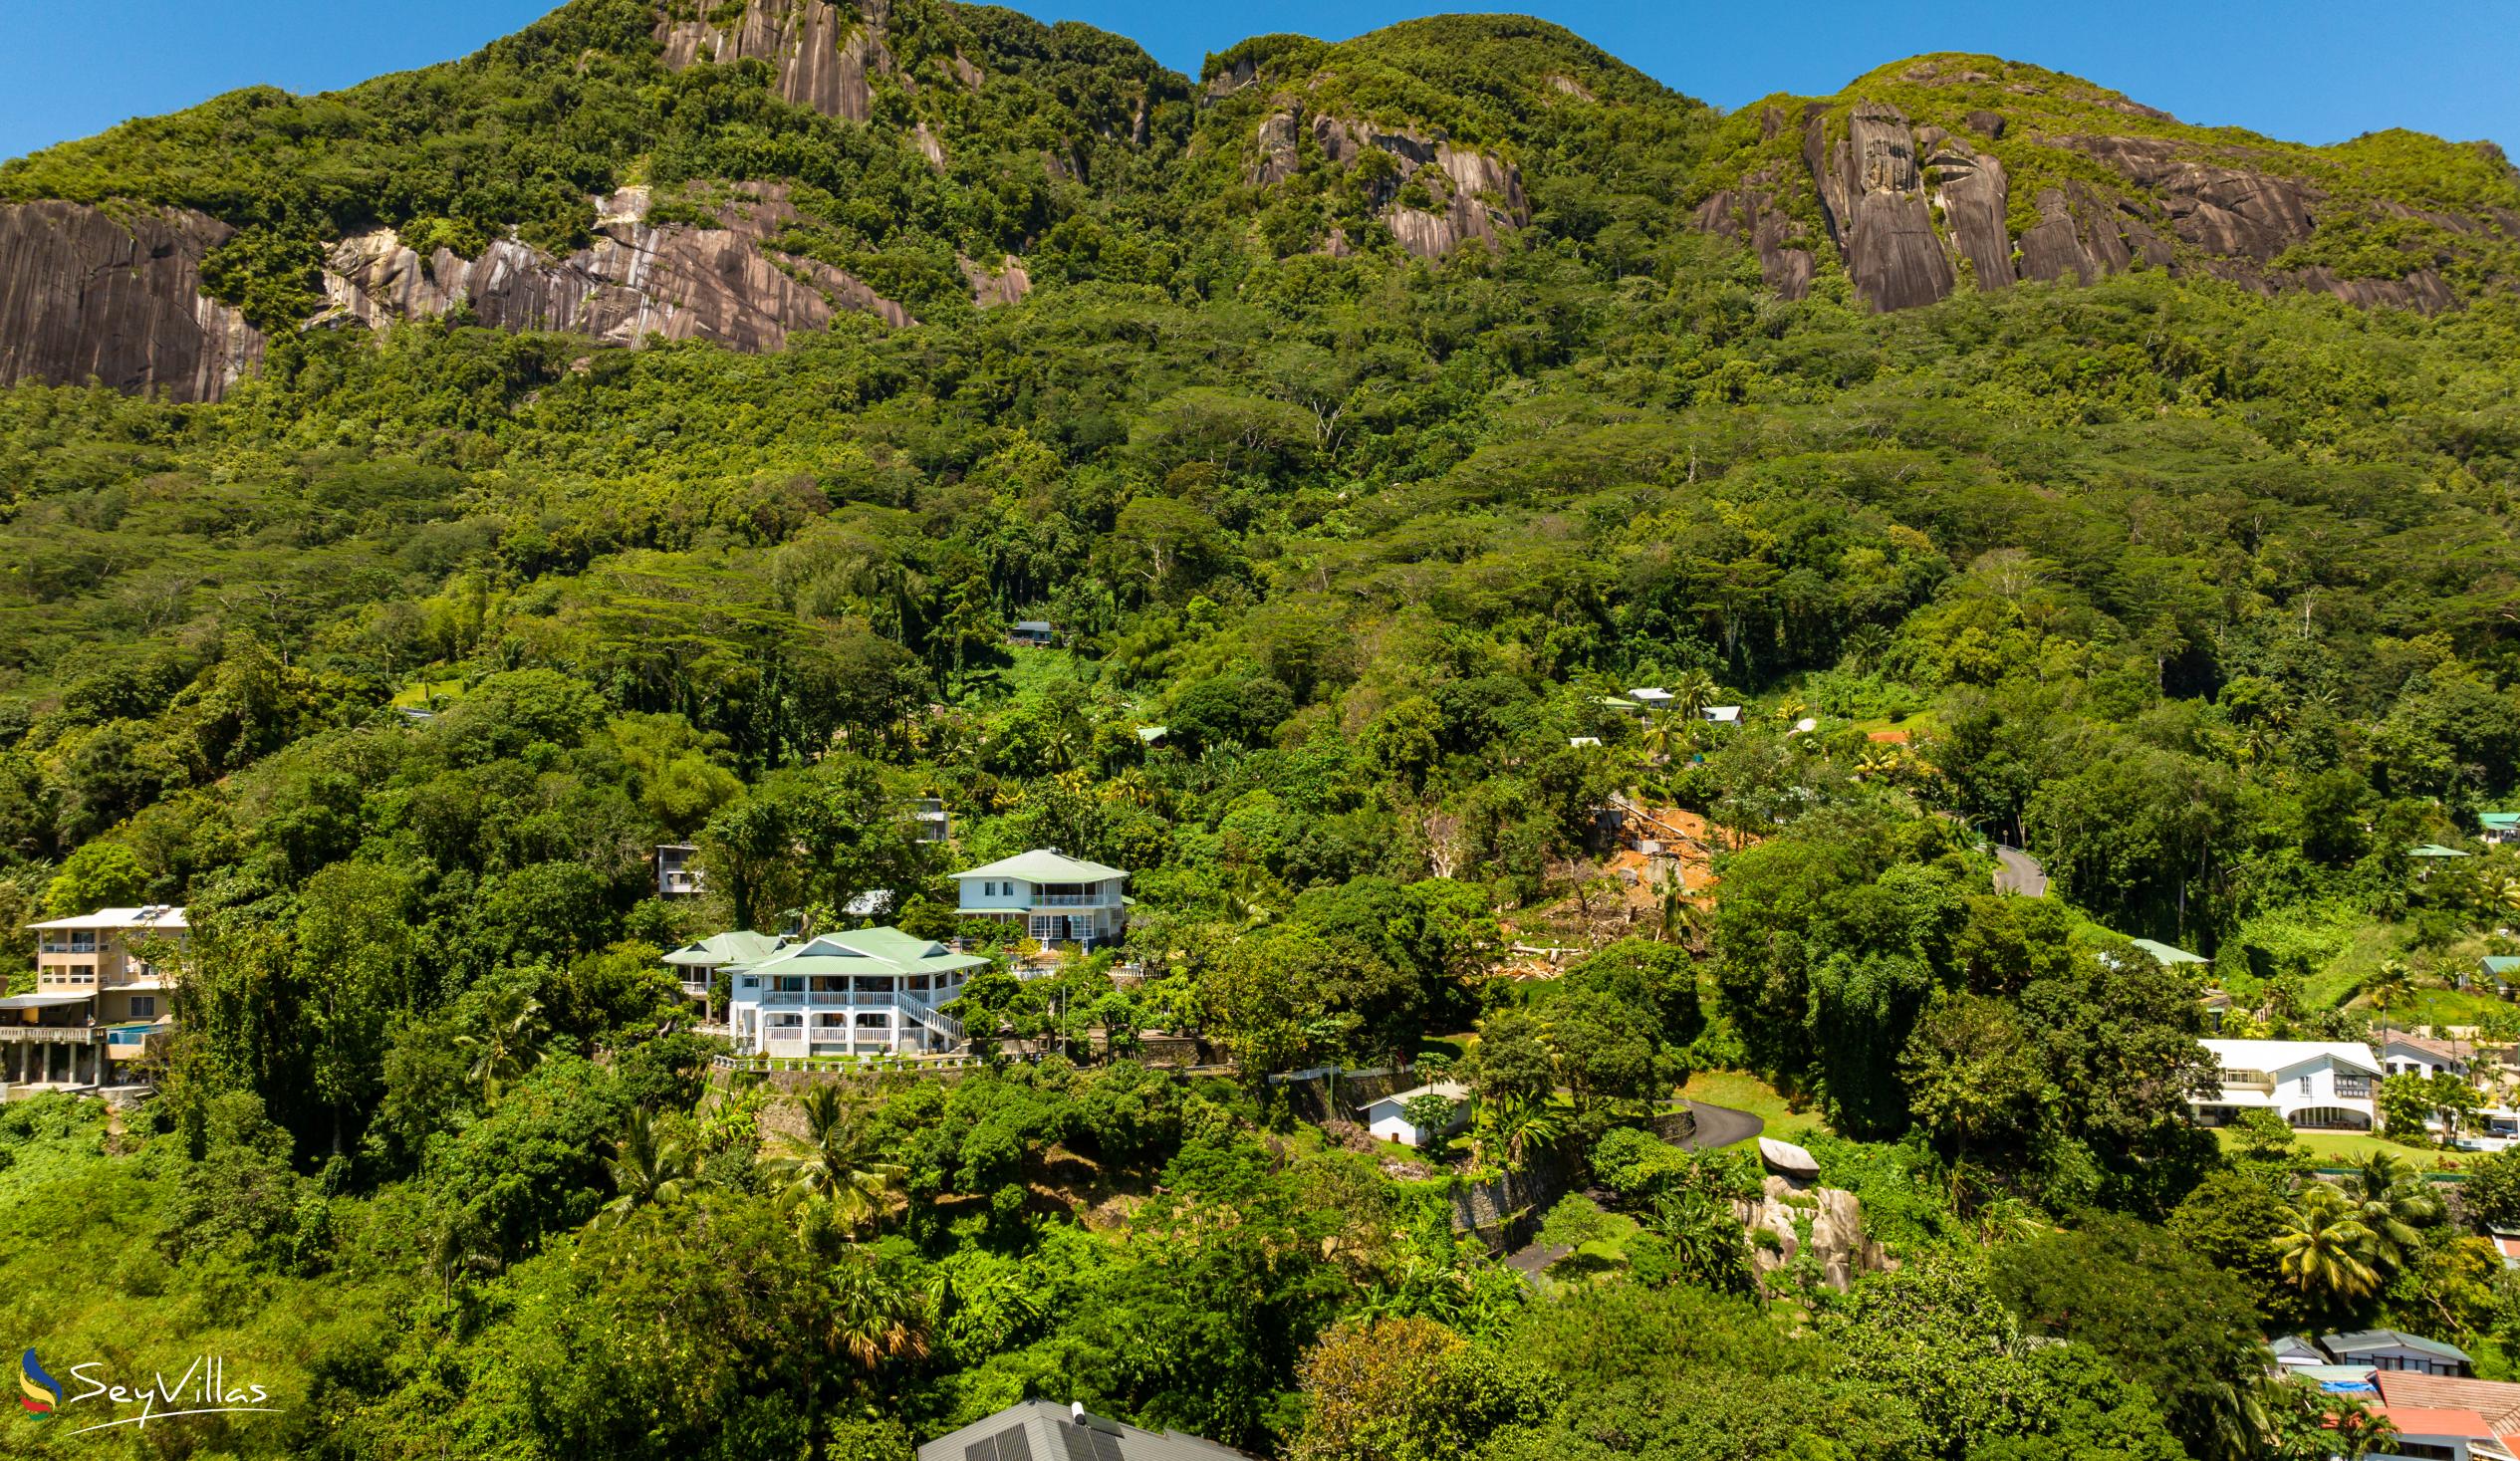 Foto 35: Beau Sejour Hotel - Posizione - Mahé (Seychelles)